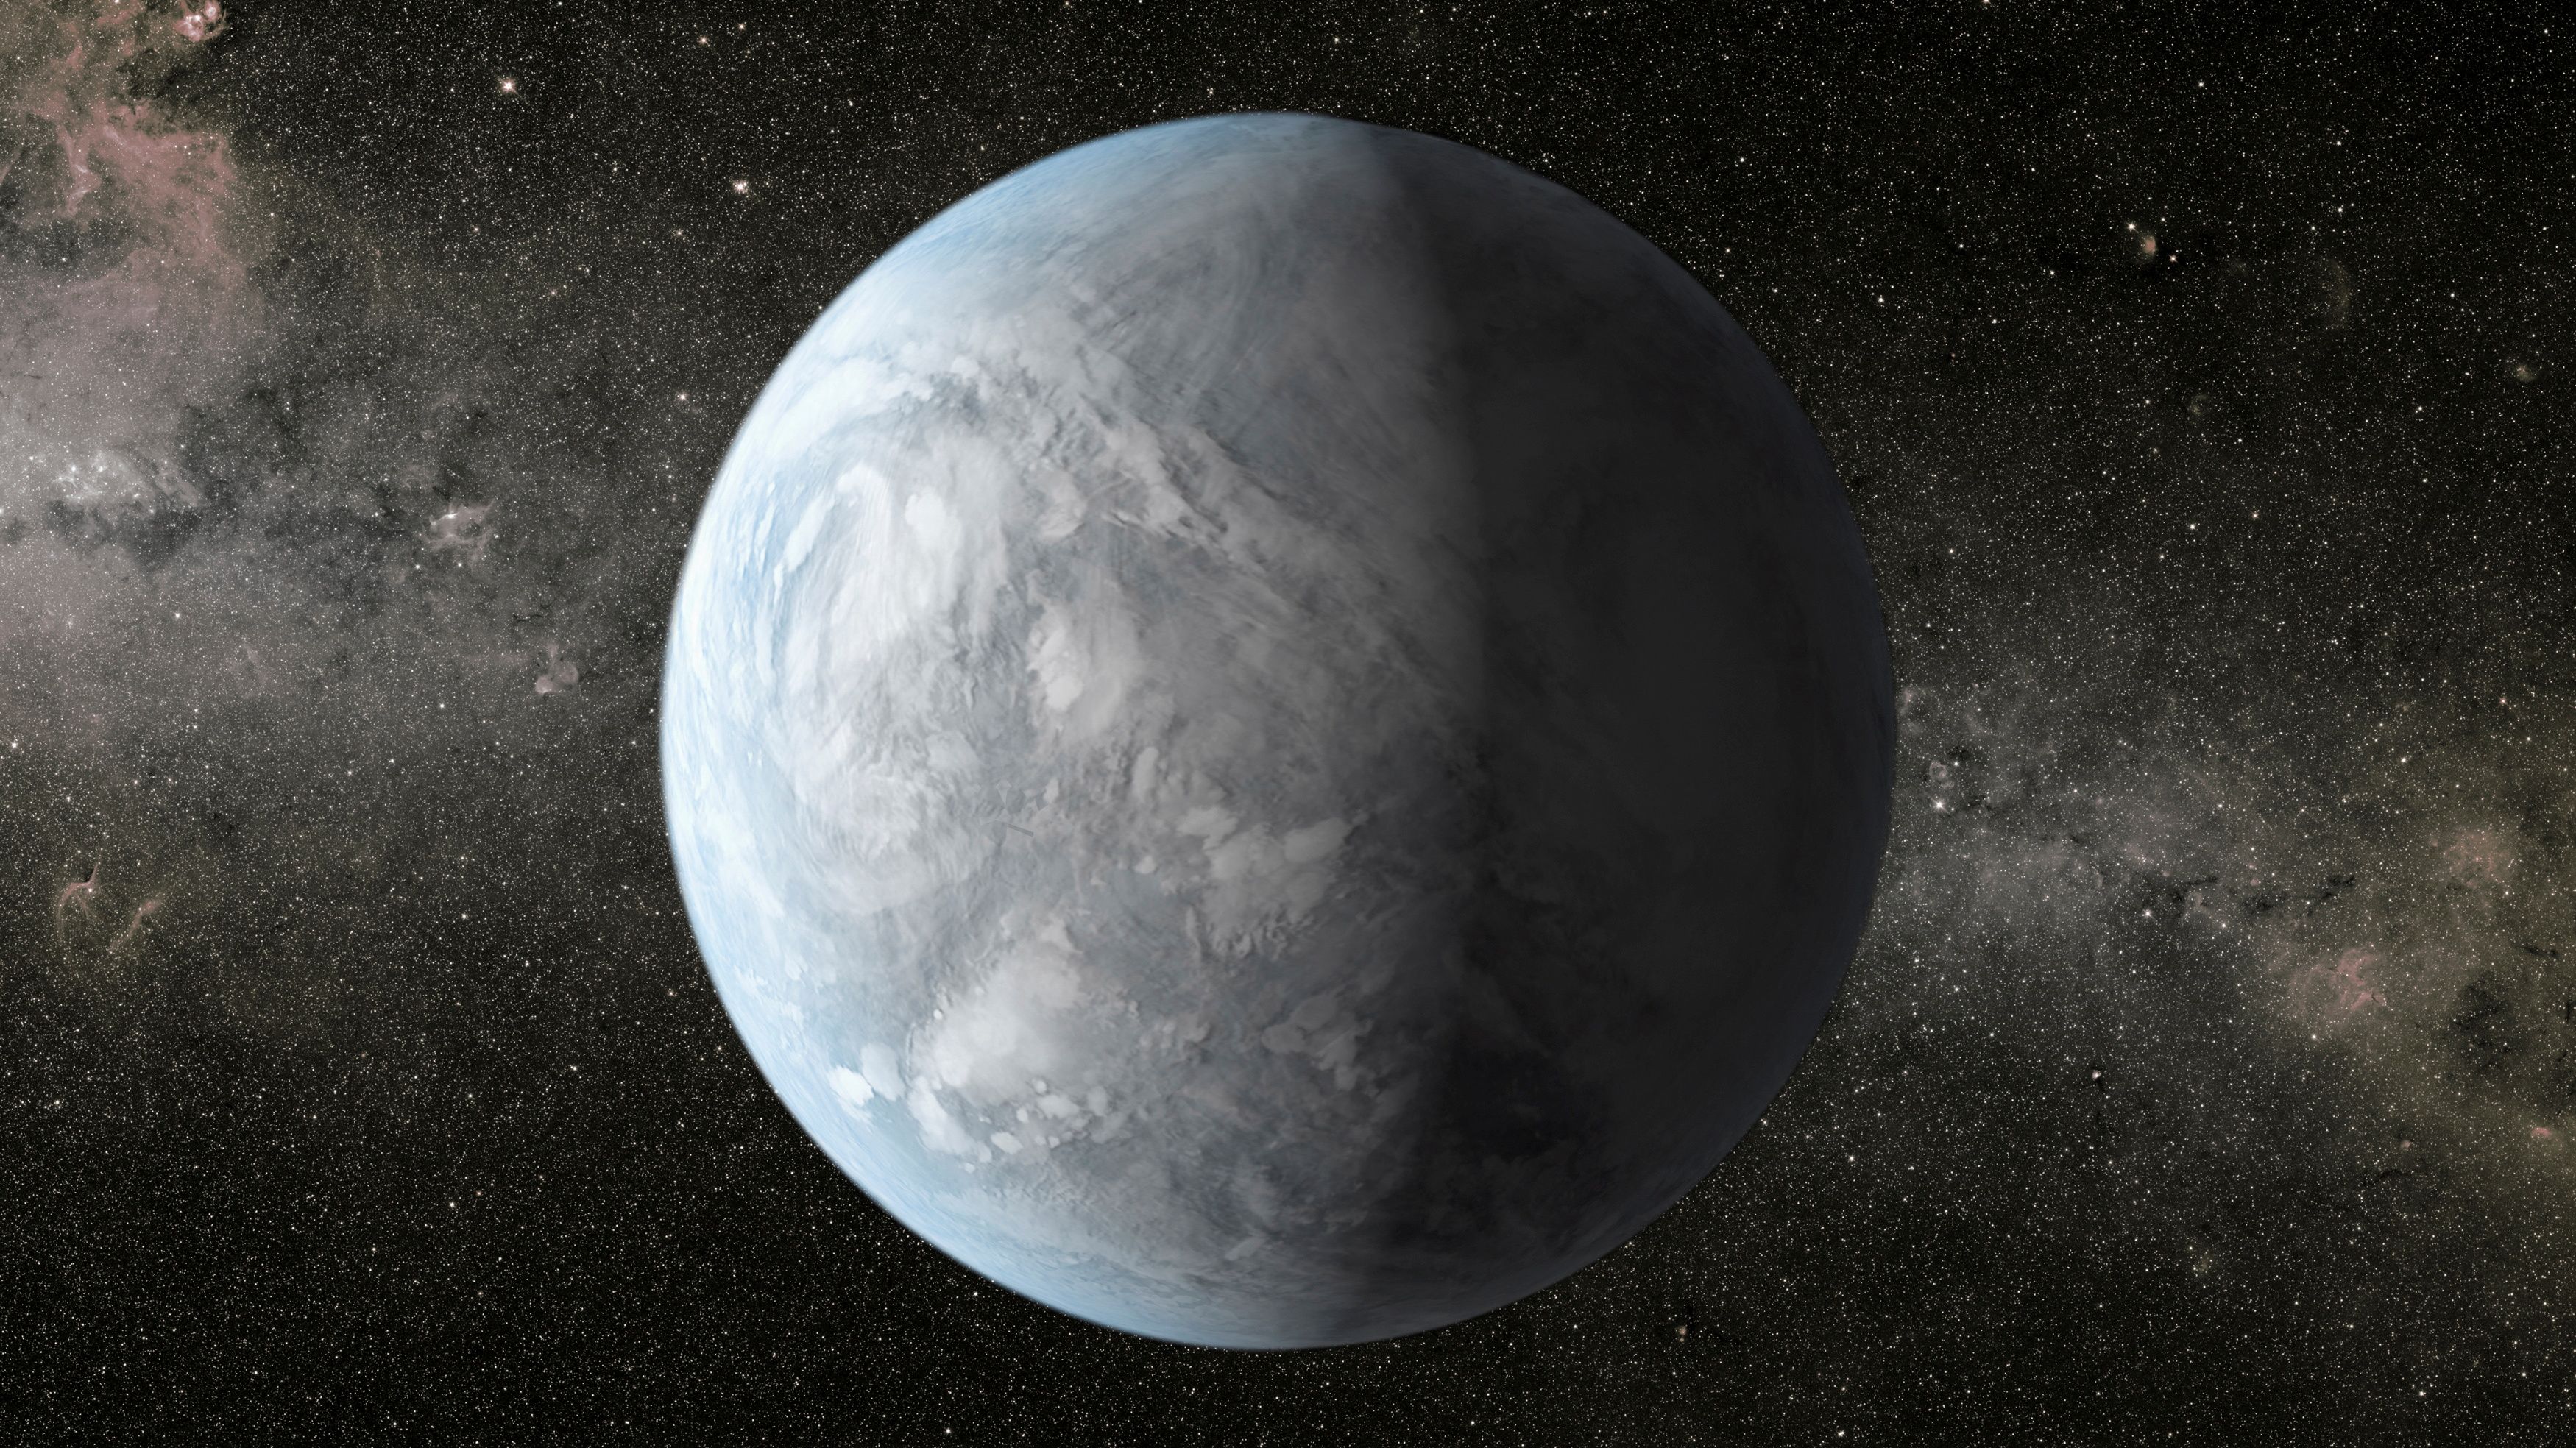 El exoplaneta TOI-1452 b probablemente sea rocoso como la Tierra, pero su radio, masa y densidad sugieren un mundo muy diferente al nuestro (REUTERS/NASA Ames/JPL-Caltech/Handout)